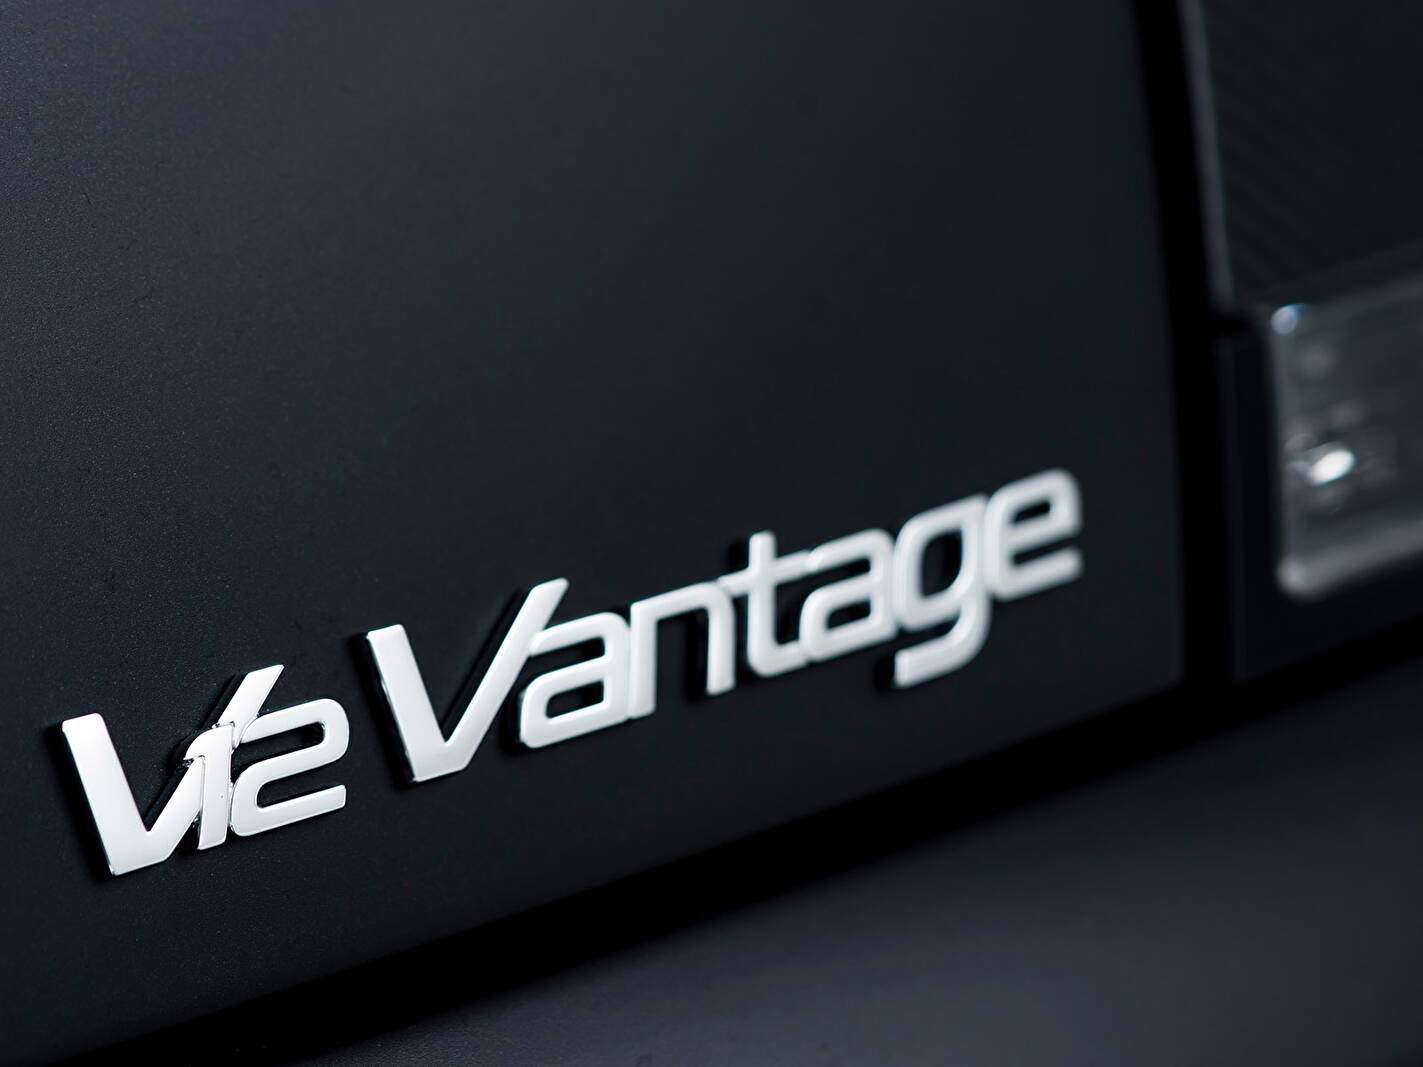 Aston Martin V12 Vantage « Carbon Black II » (2013),  ajouté par fox58